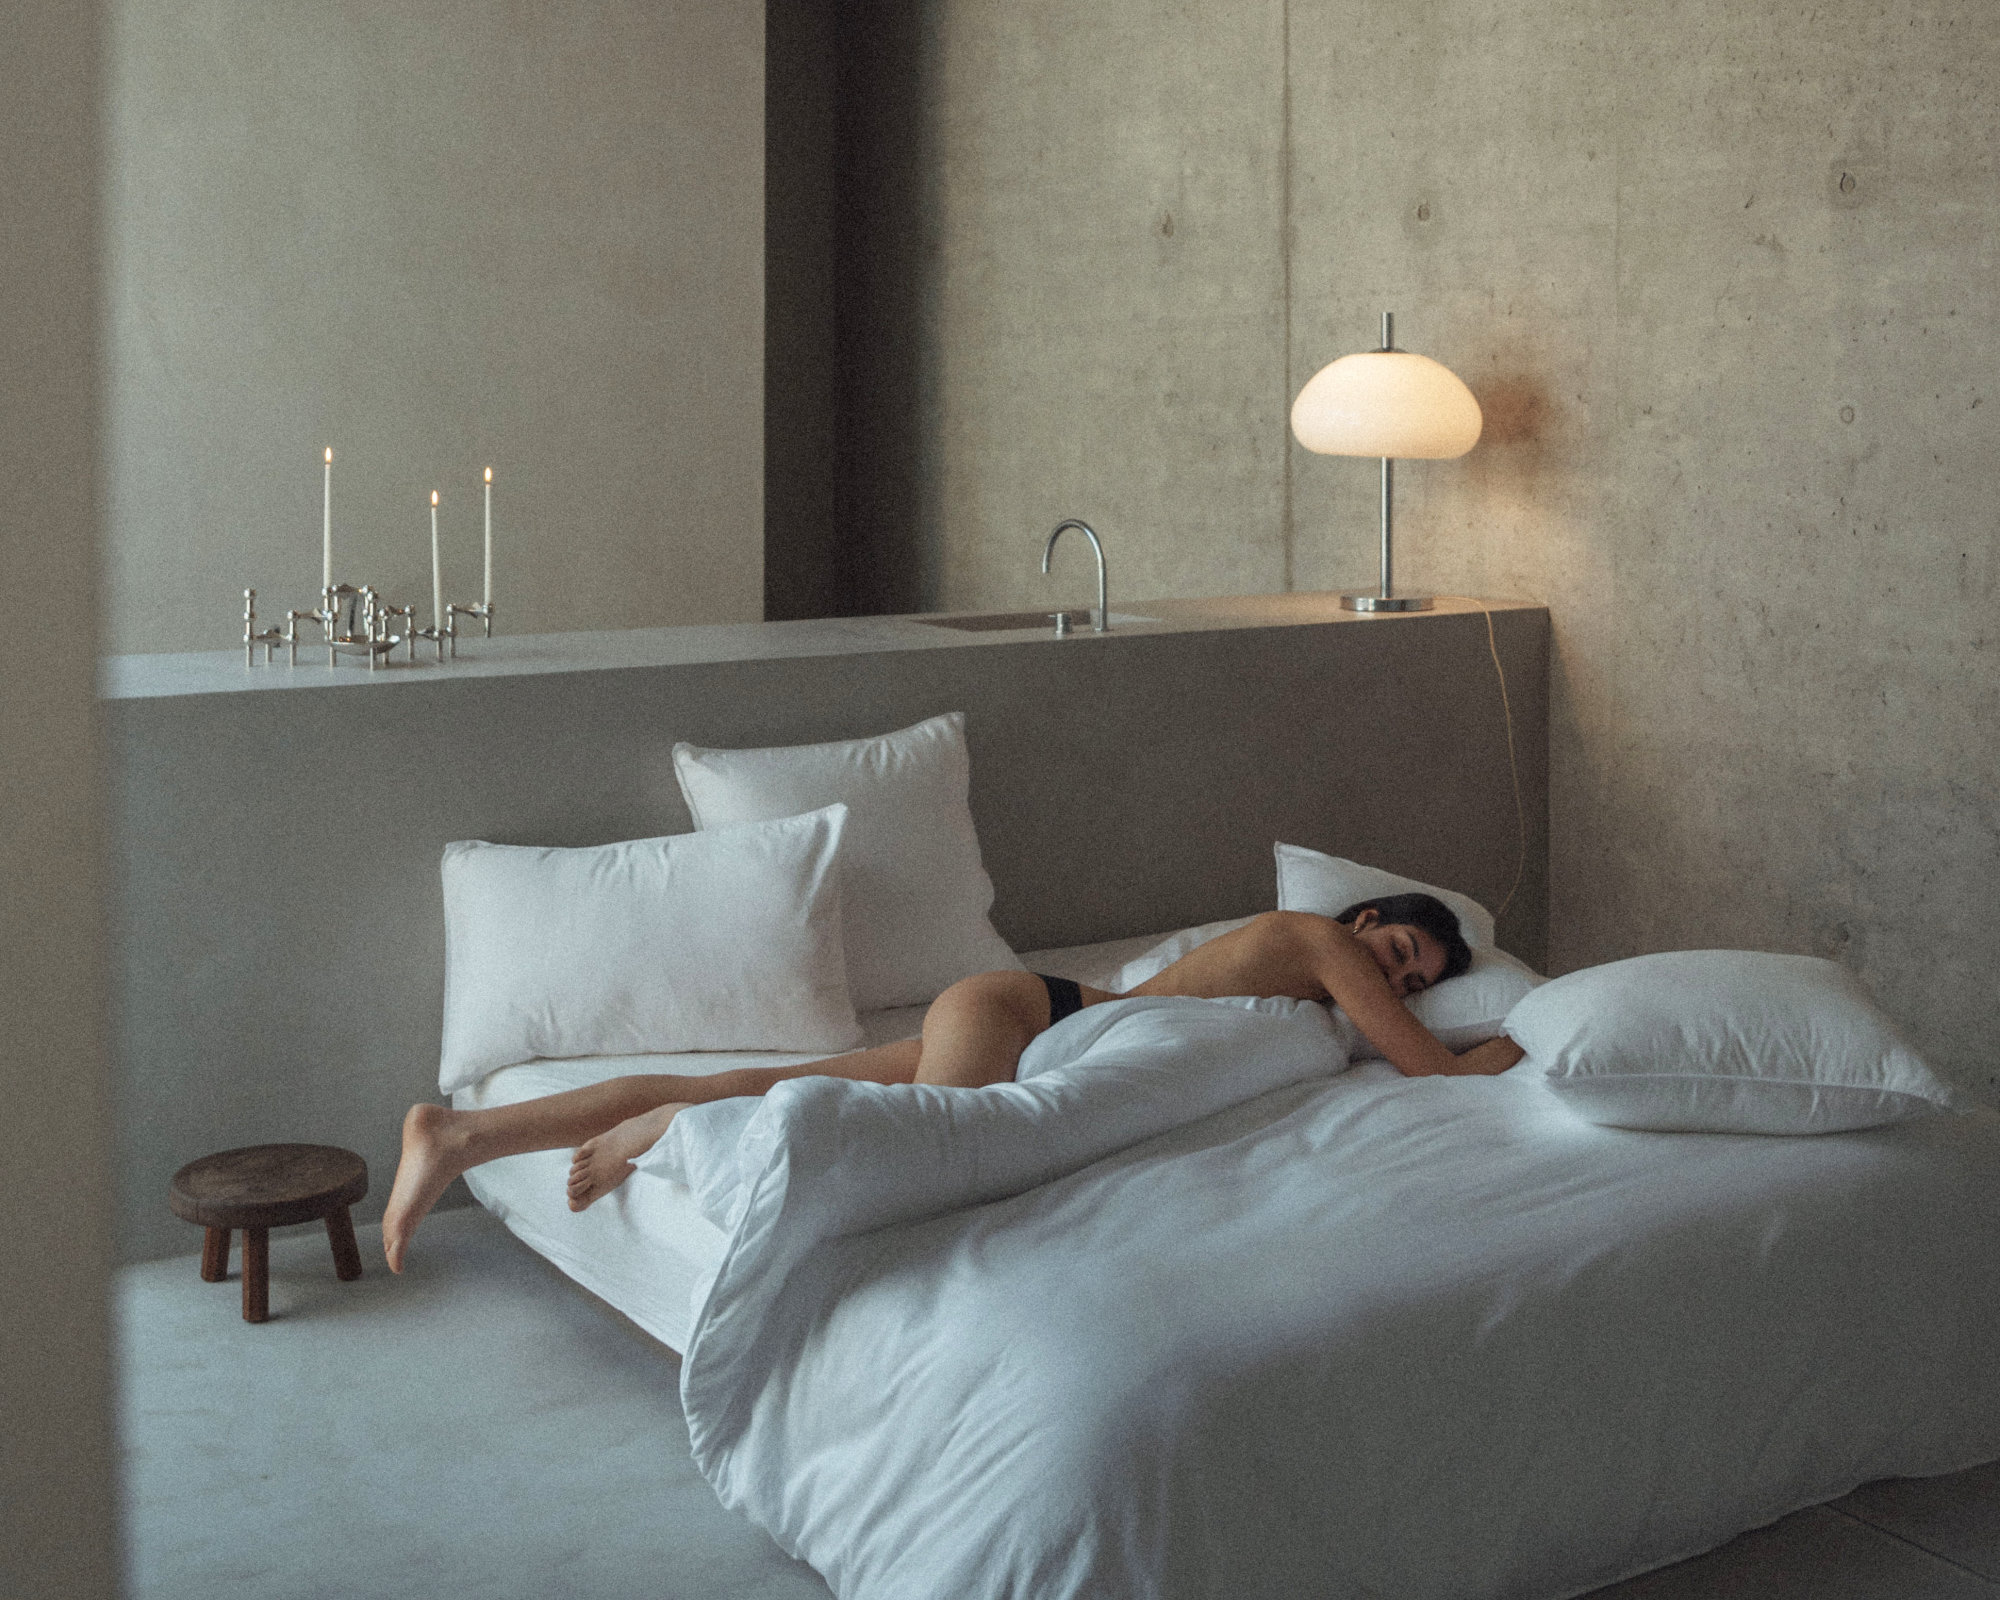 MARIE-MARIE - Bed linen set SLEEPY SATEEN White - 240x220 cm + 2 slopen 65x65 cm - White